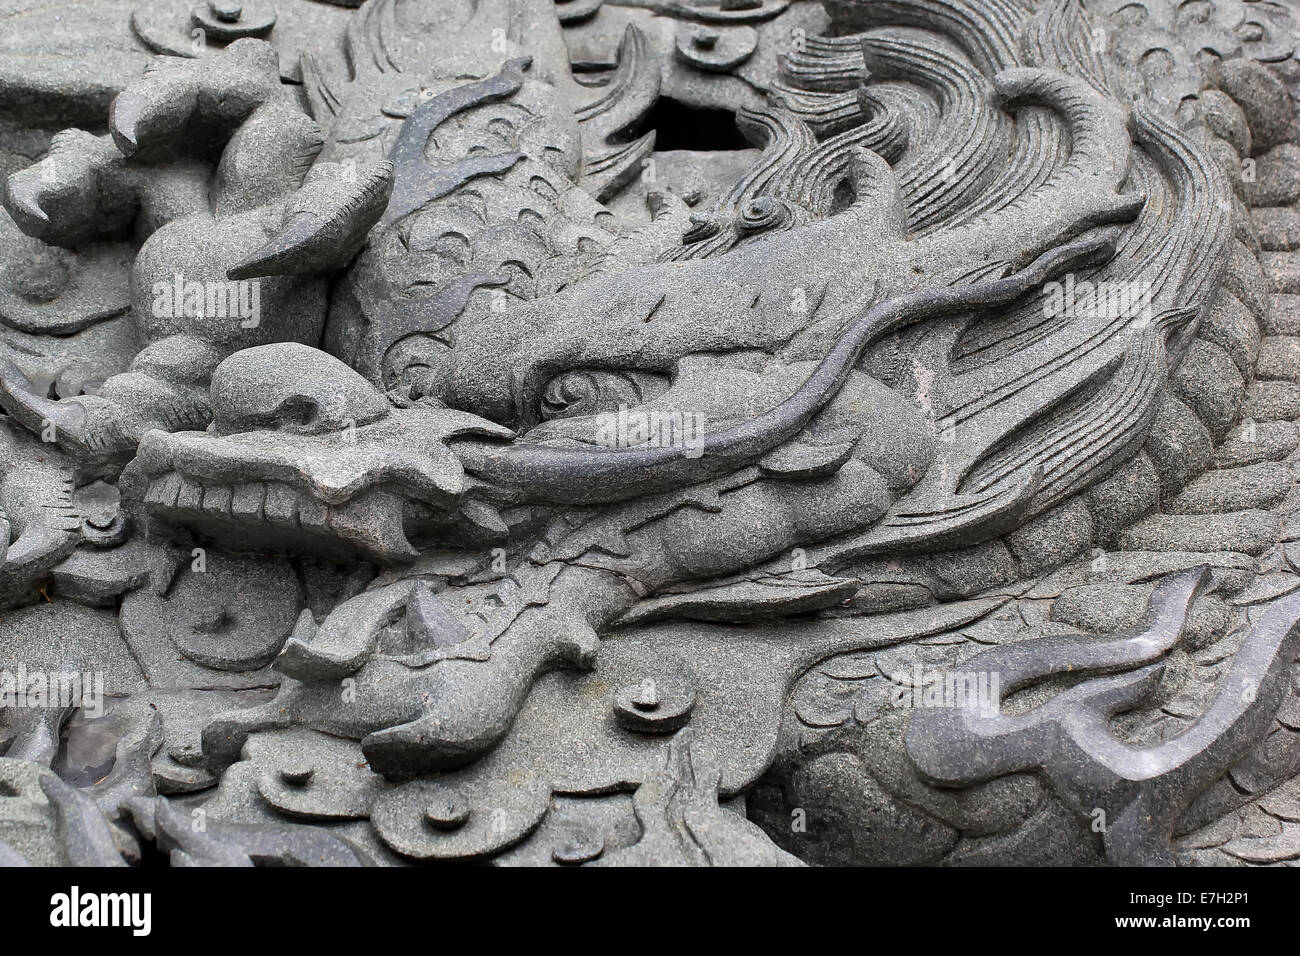 beautiful stone chinese dragon statue Stock Photo - Alamy